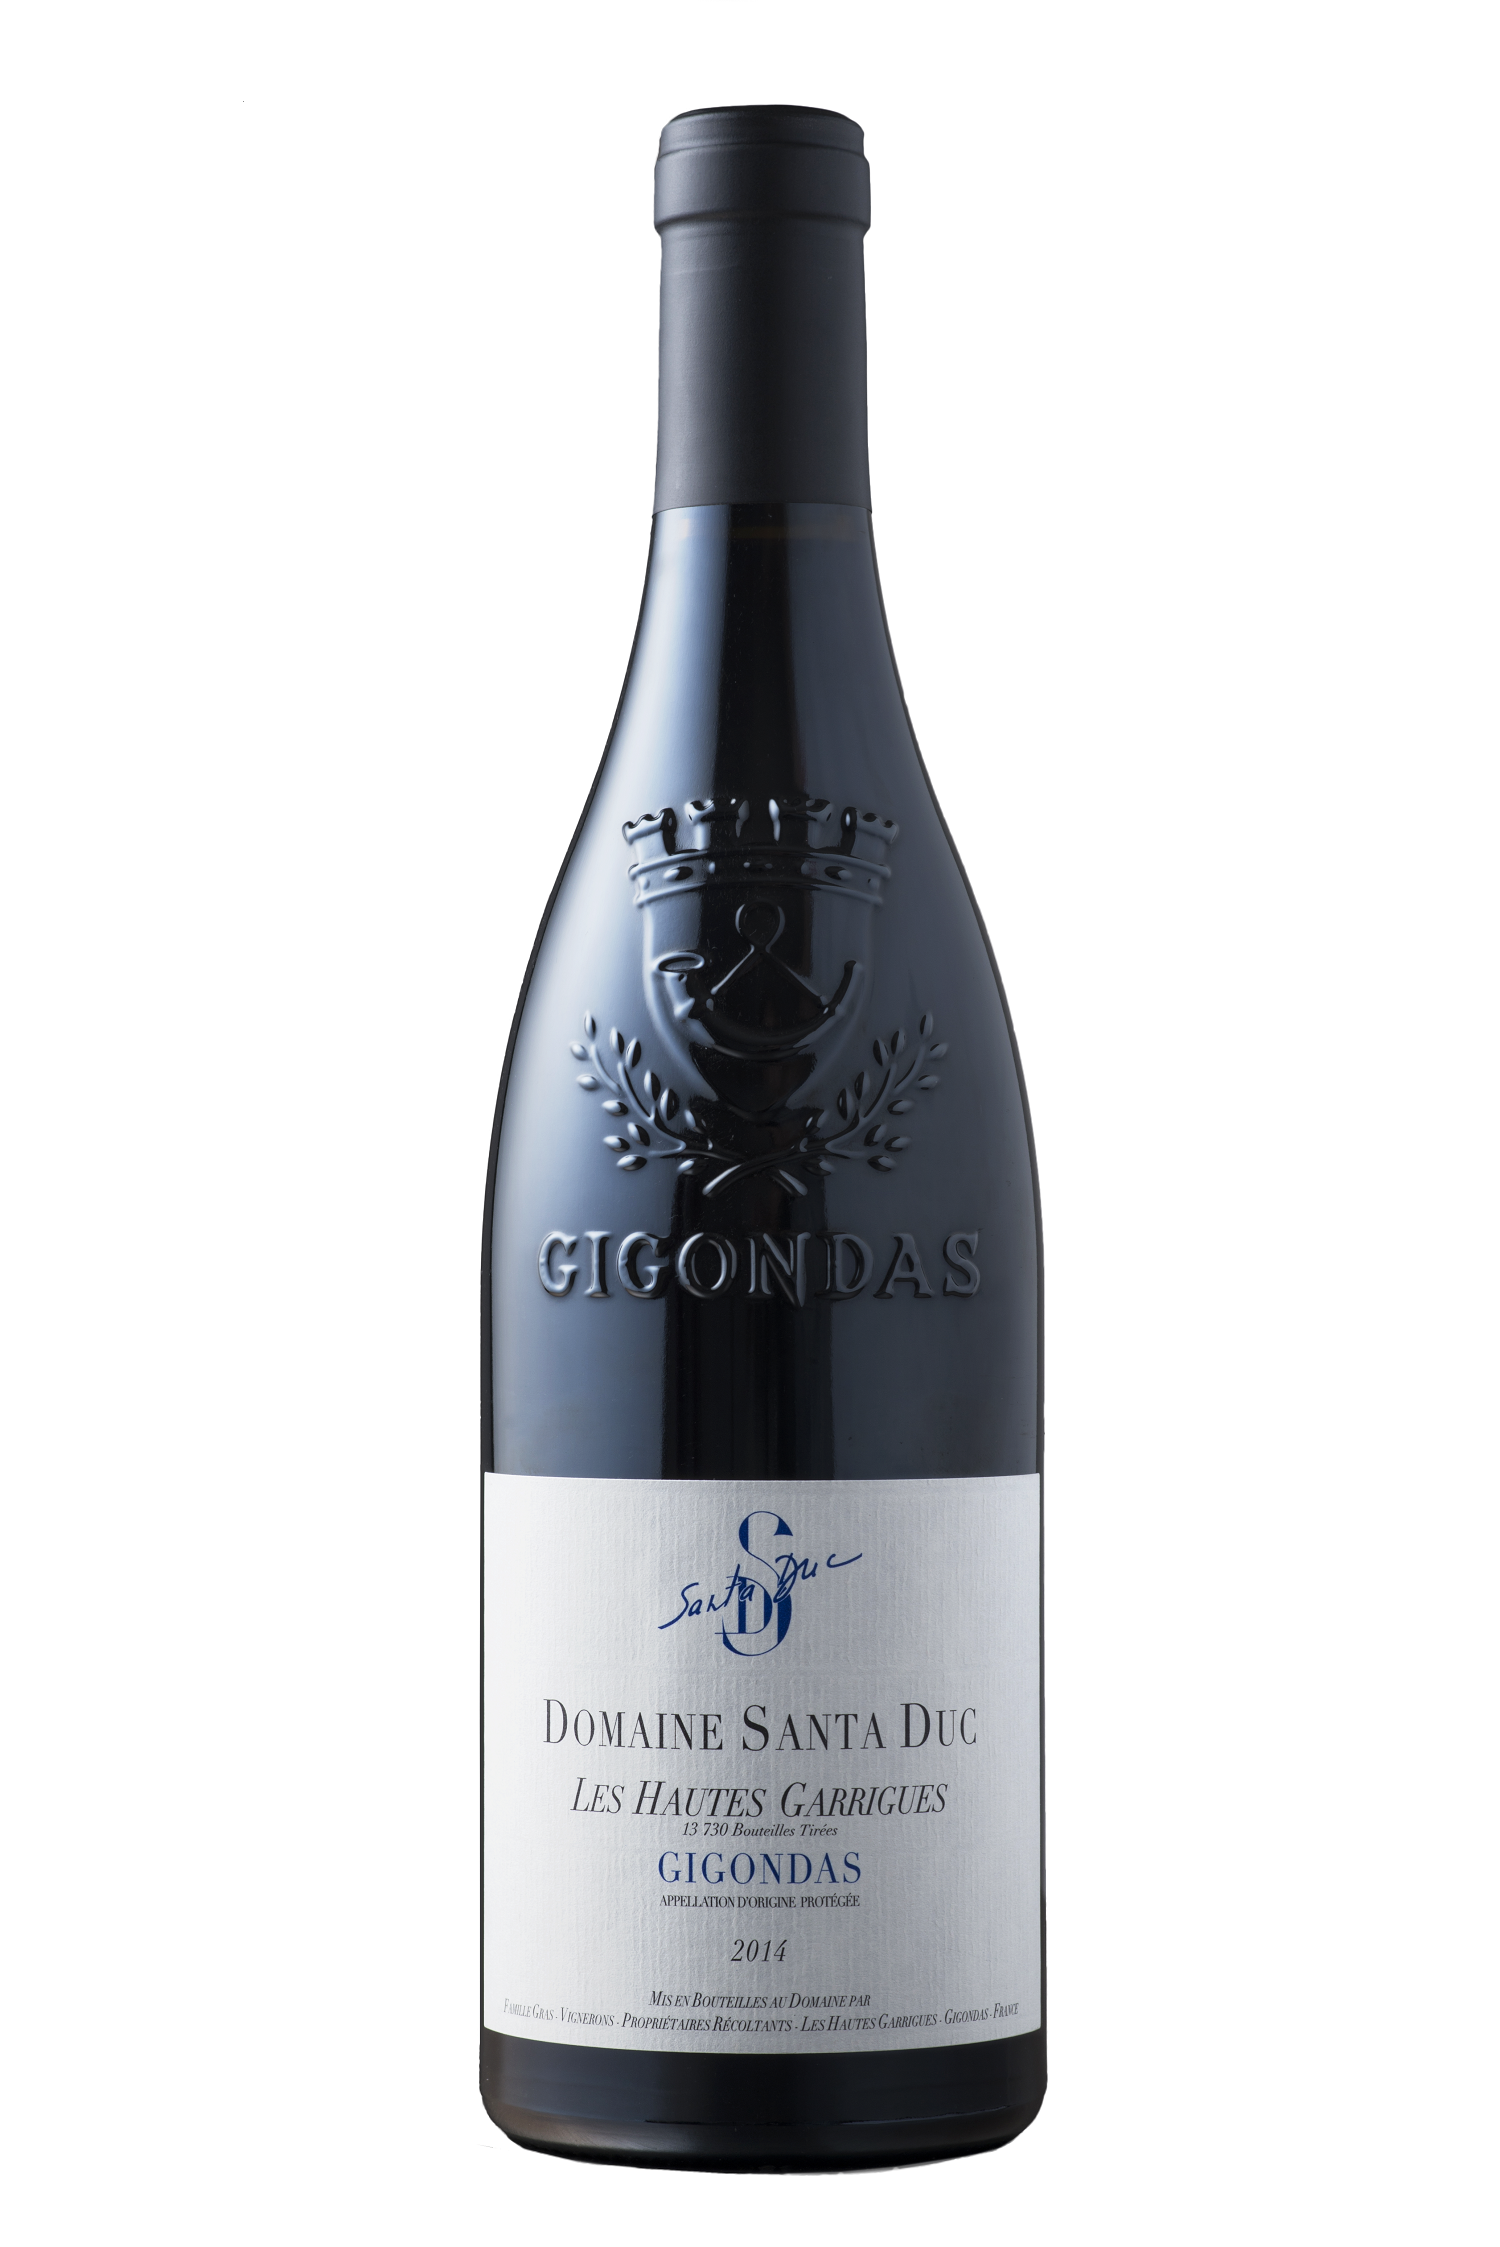 Gigondas Prestige des Hautes Garrigues 75cl 2015 Domaine Santa Duc